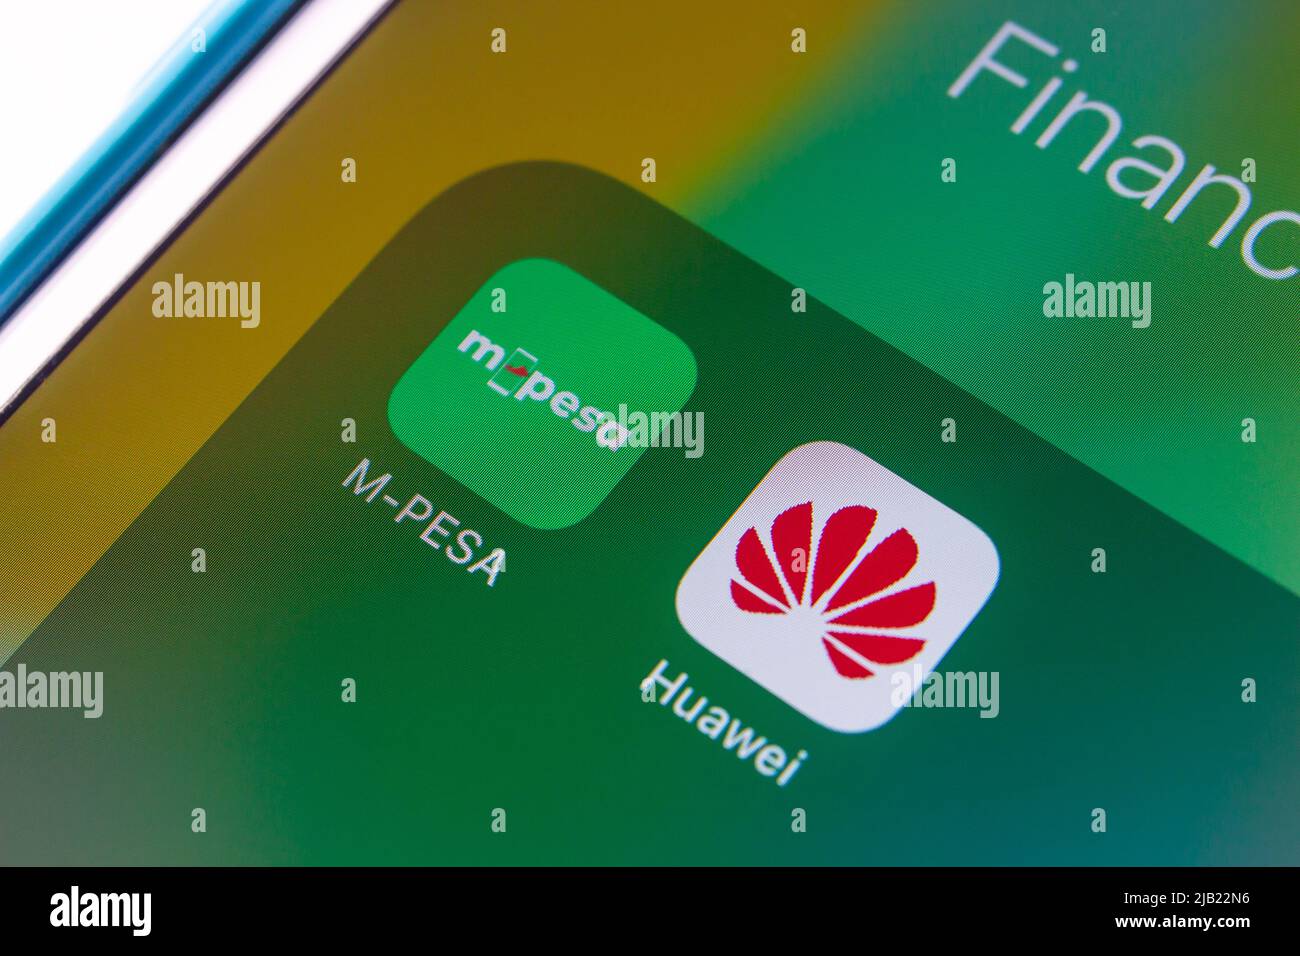 Image conceptuelle des icônes Mpesa et Huawei sur un iPhone. M-Pesa est un service de transfert d'argent et de paiement par téléphone portable de Vodafone et Safaricom Banque D'Images